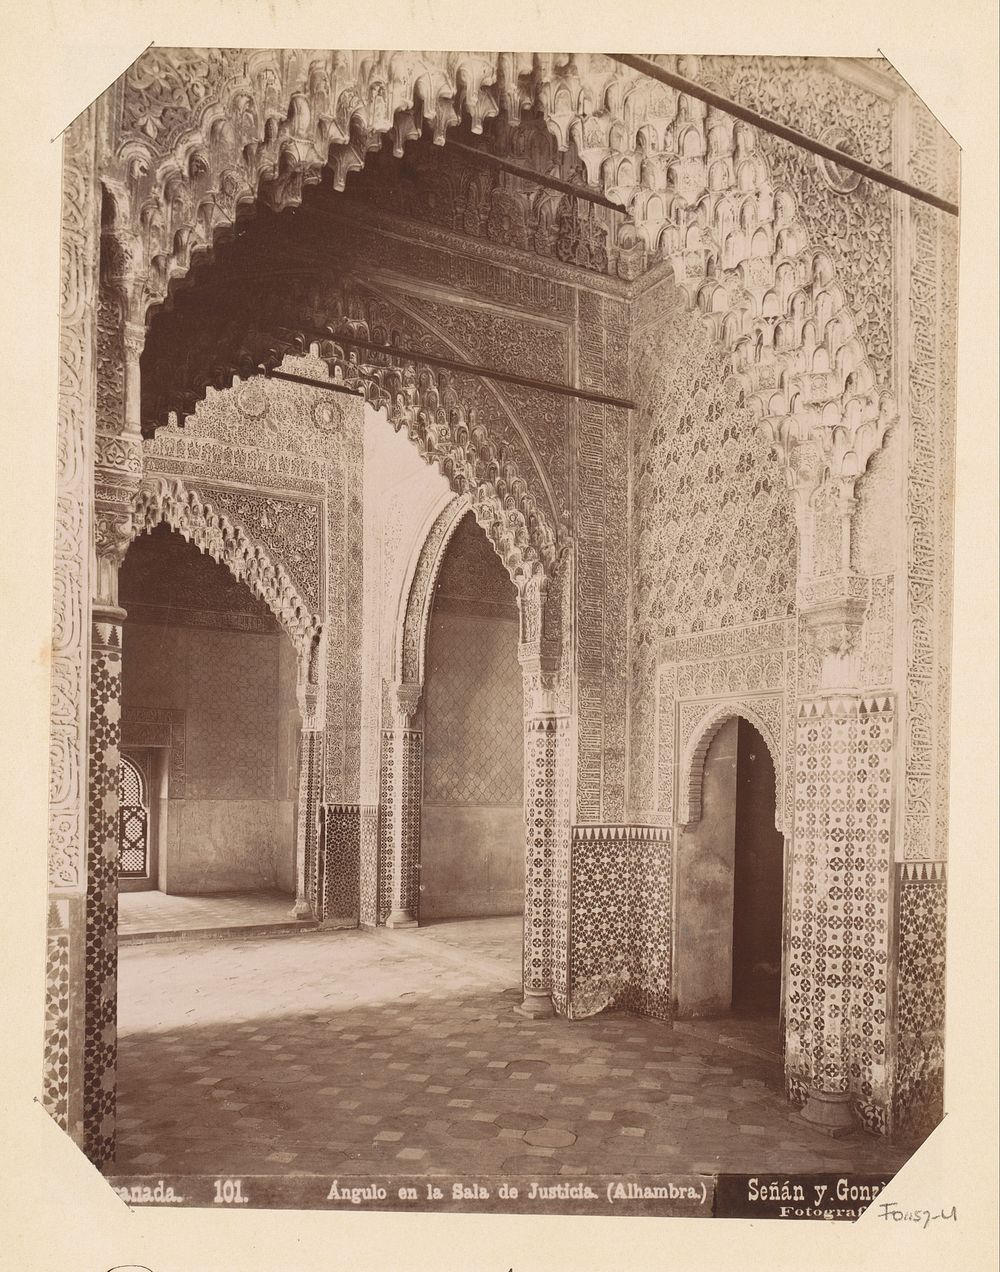 Sala de Justicia in het Alhambra te Granada (c. 1885 - in or before 1892) by Señan y Gonzalez